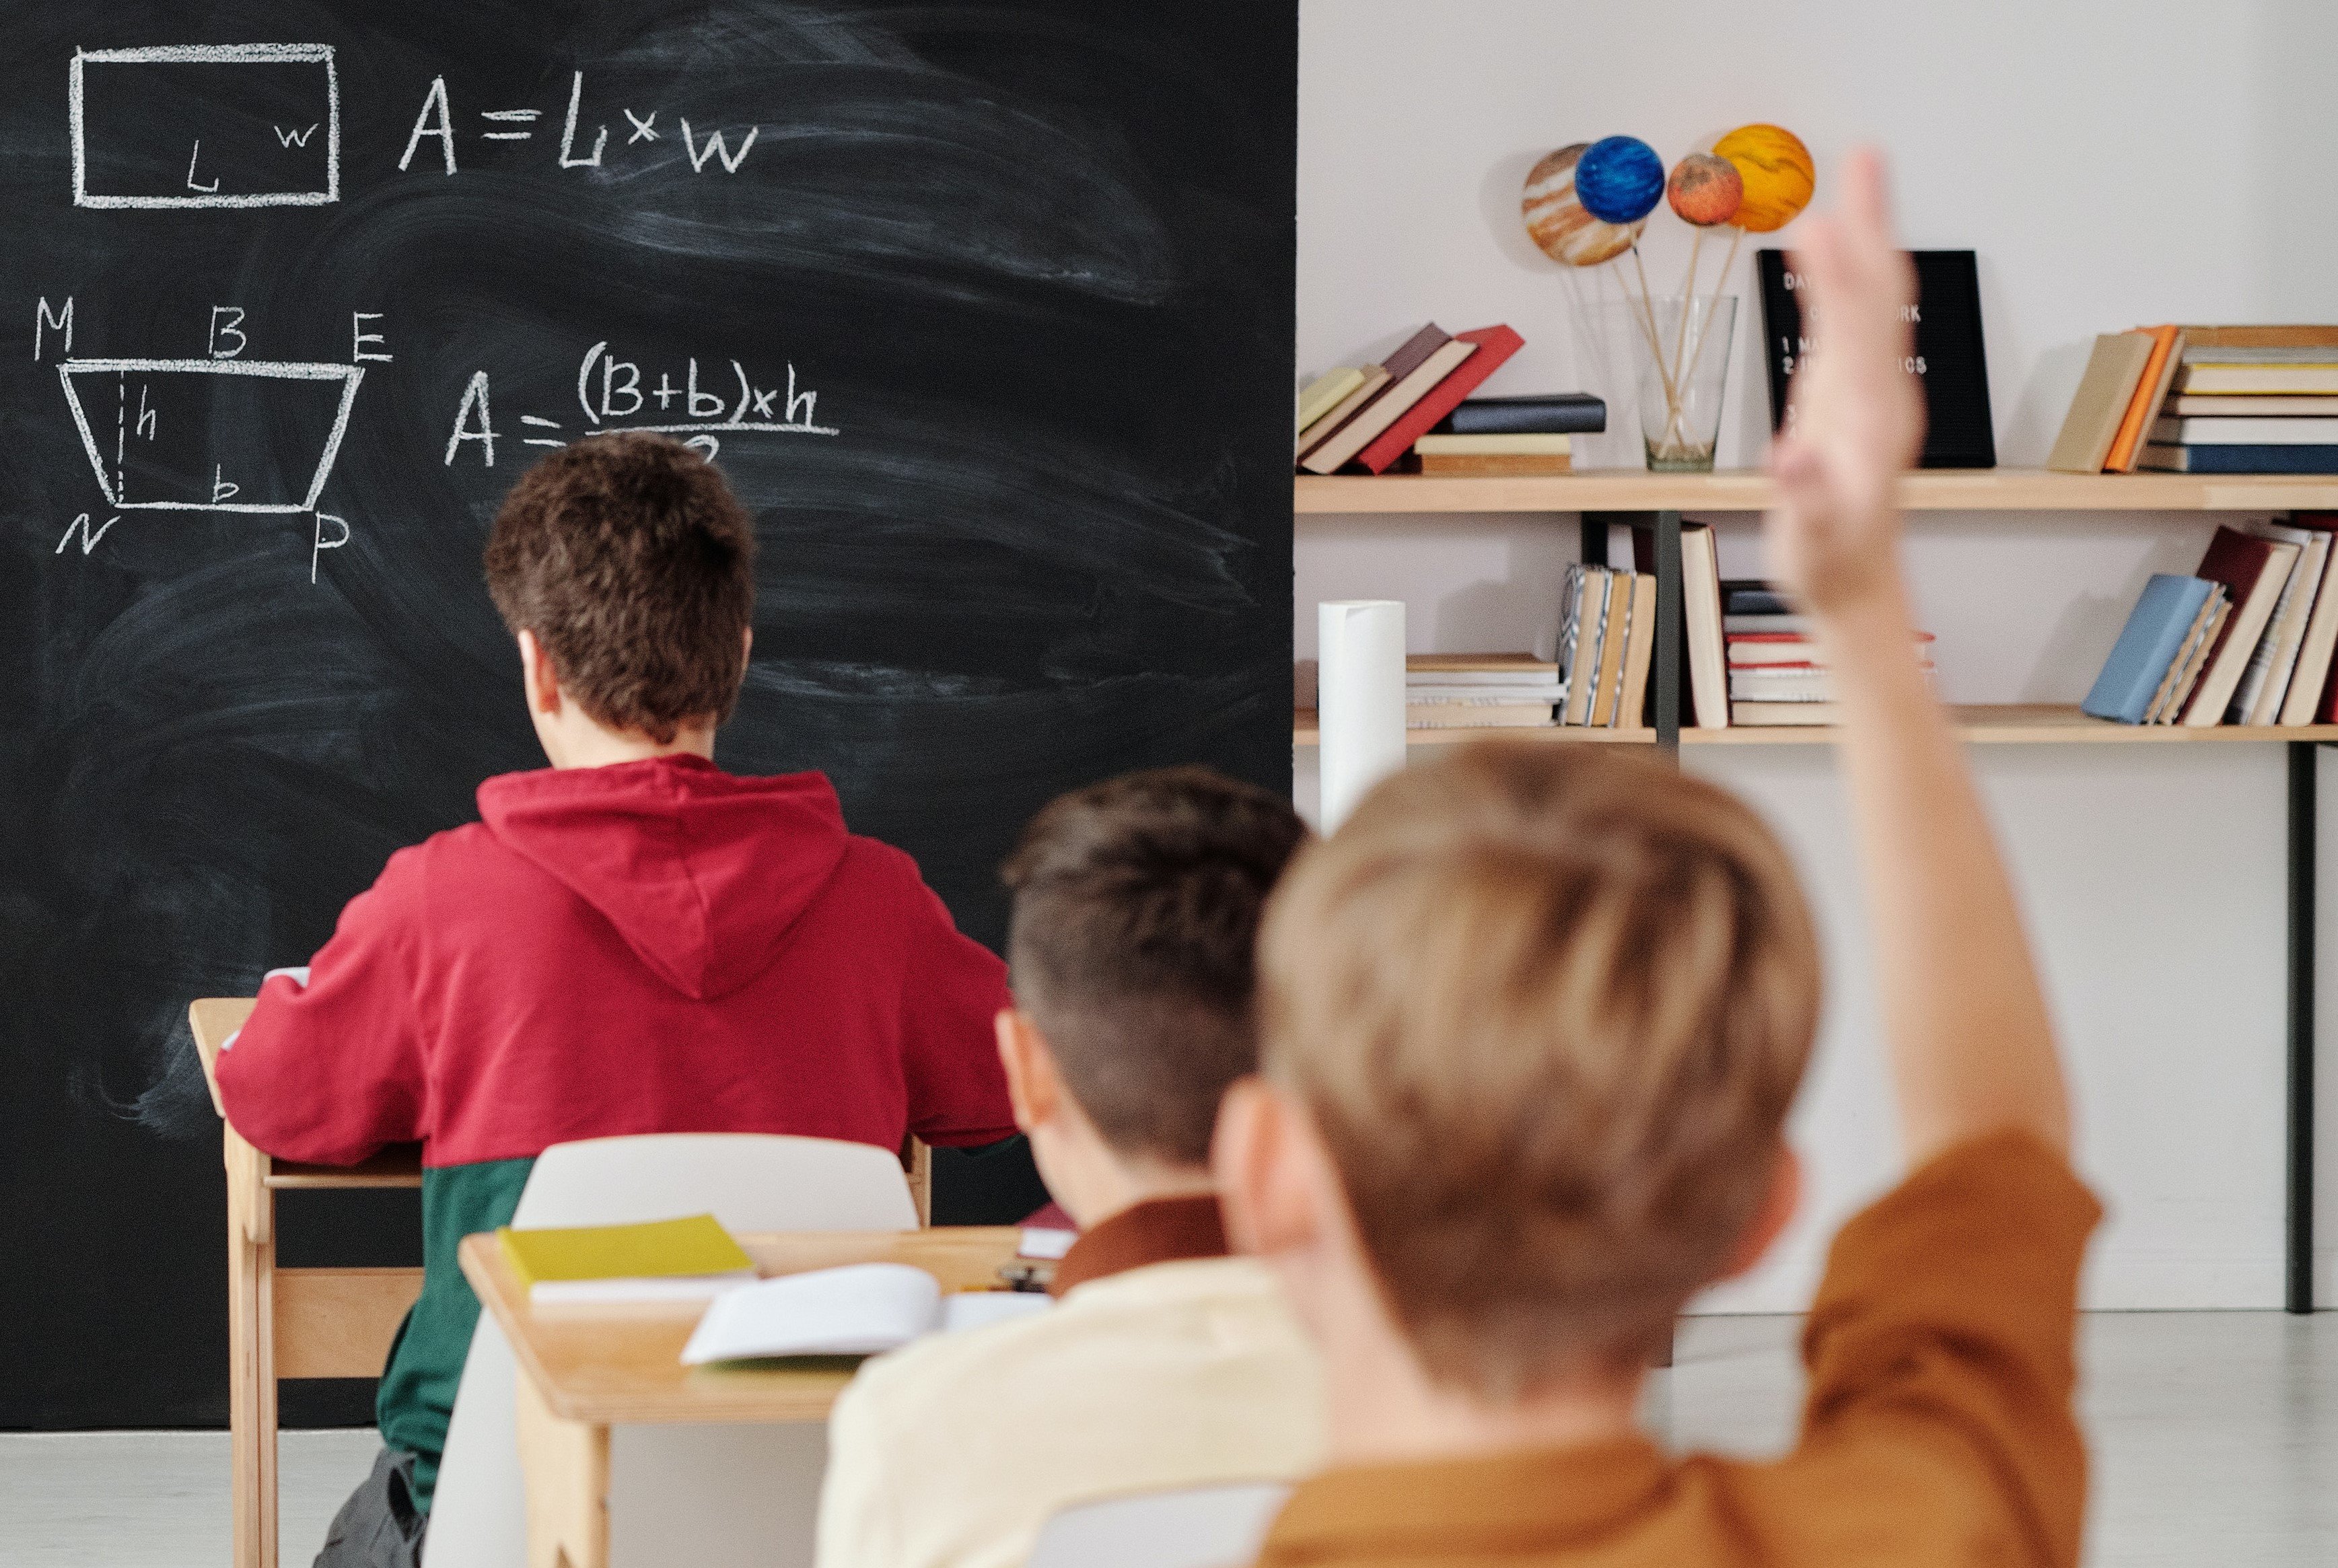 Der Schüler hatte im Matheunterricht oft Zweifel & unterbrach seine Lehrerin zur Klärung | Quelle: Pexels